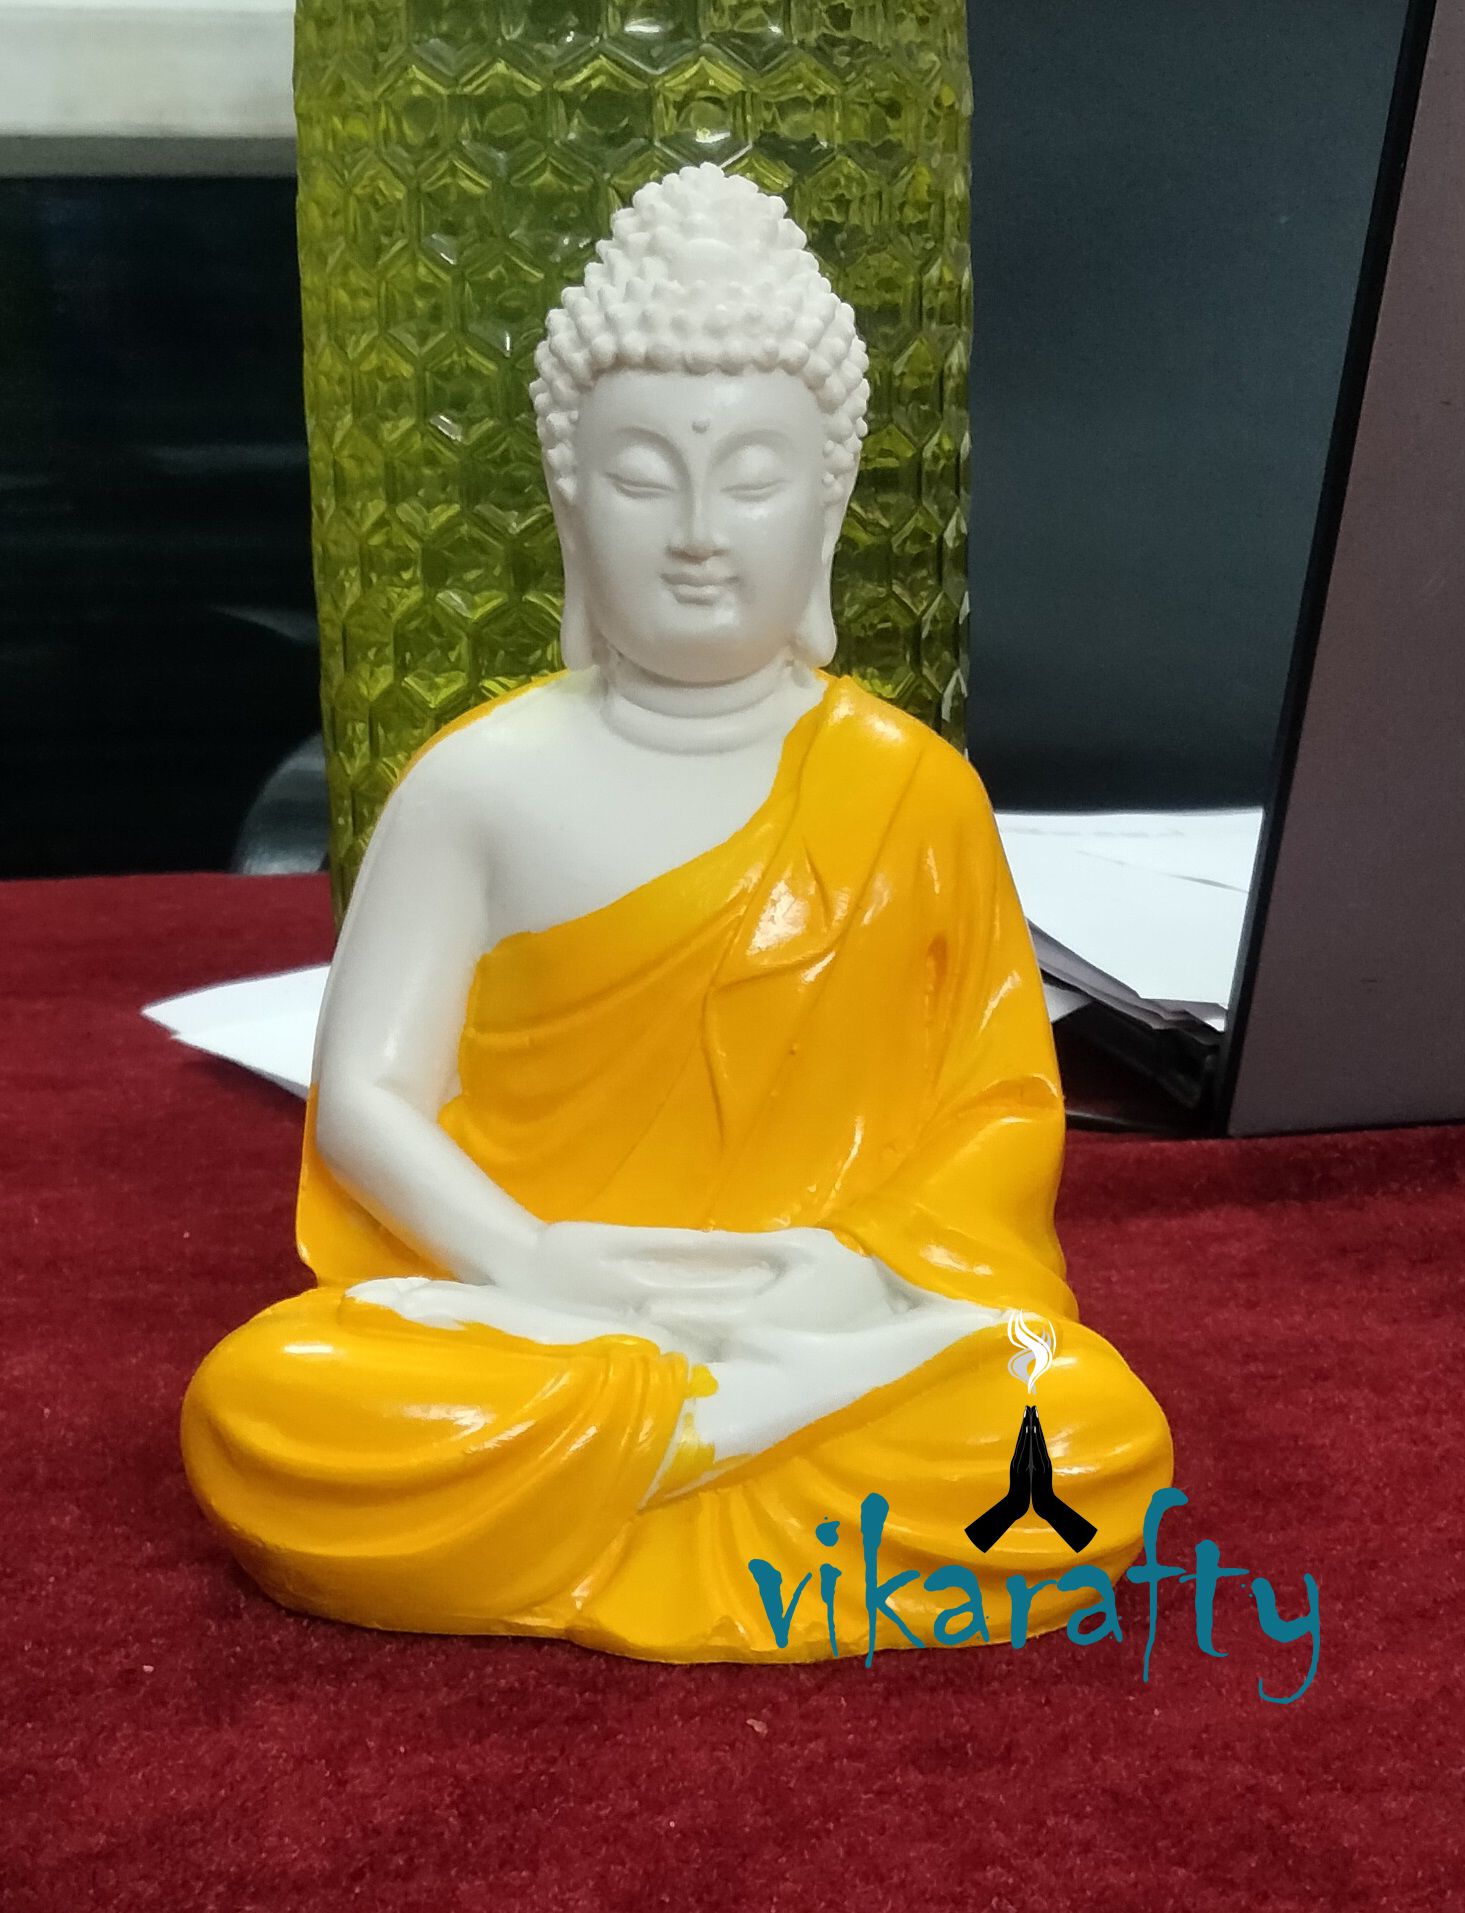     			Vikarafty Samadhi Buddha Showpiece 14 cm - Pack of 1